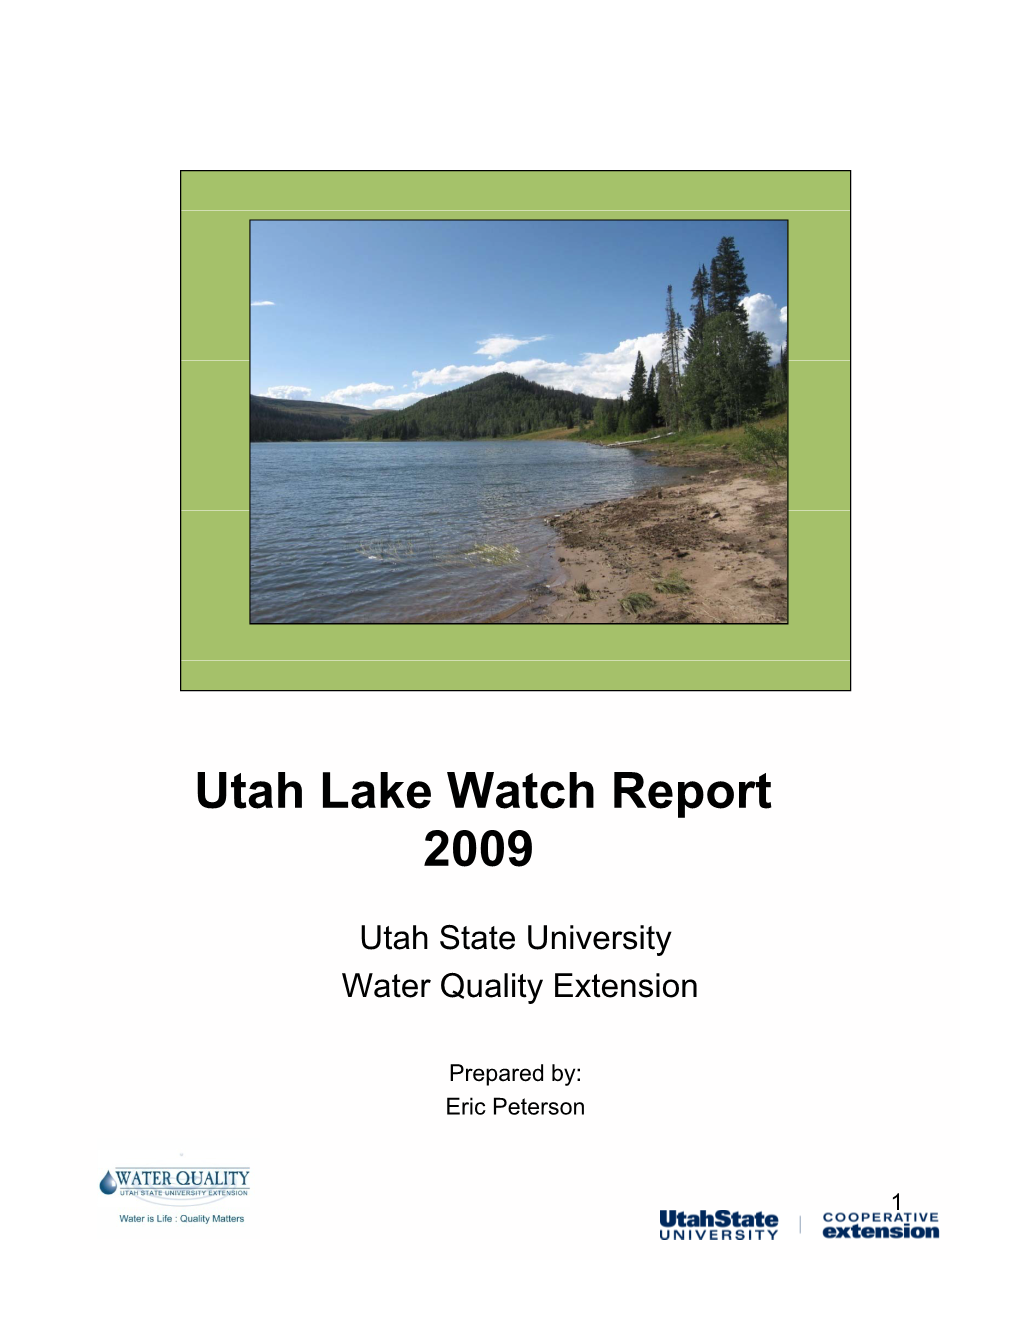 Utah Lake Watch Report 2009